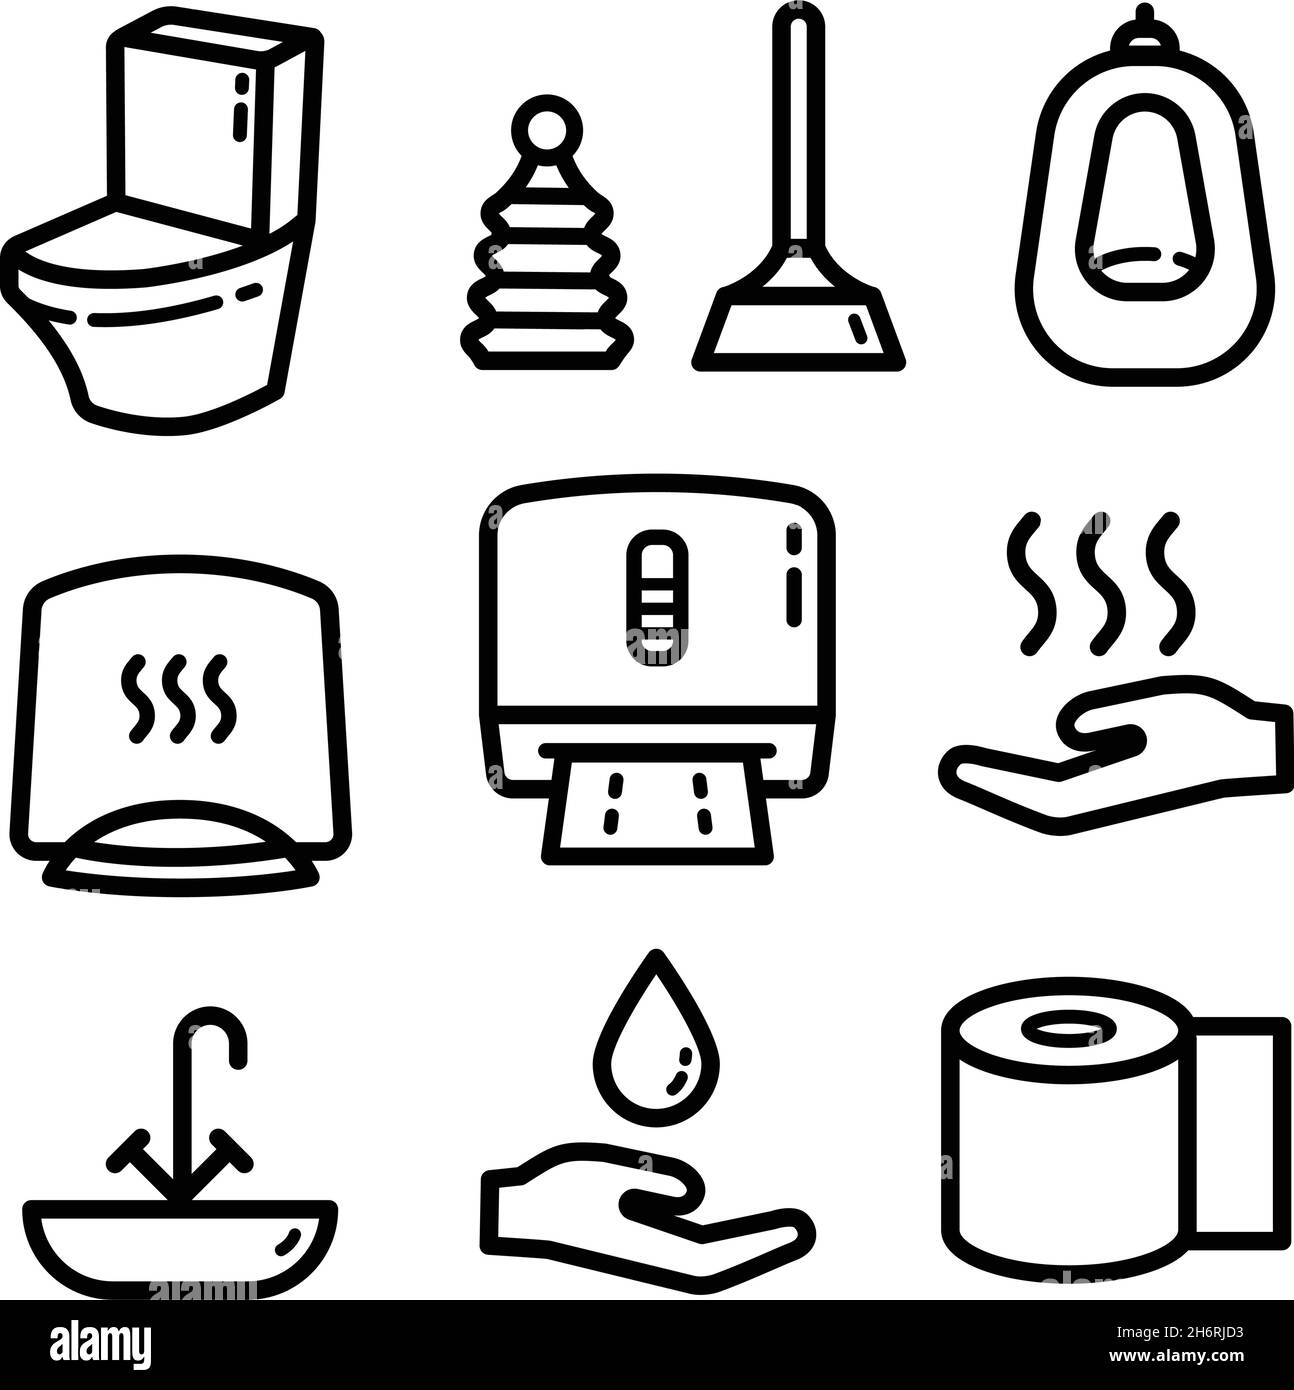 Ensemble d'icônes sanitaires telles que toilettes, serviette, plongeur, toilettes, urinoir,Papier toilette etc. Illustration vectorielle isolée sur fond blanc. Illustration de Vecteur